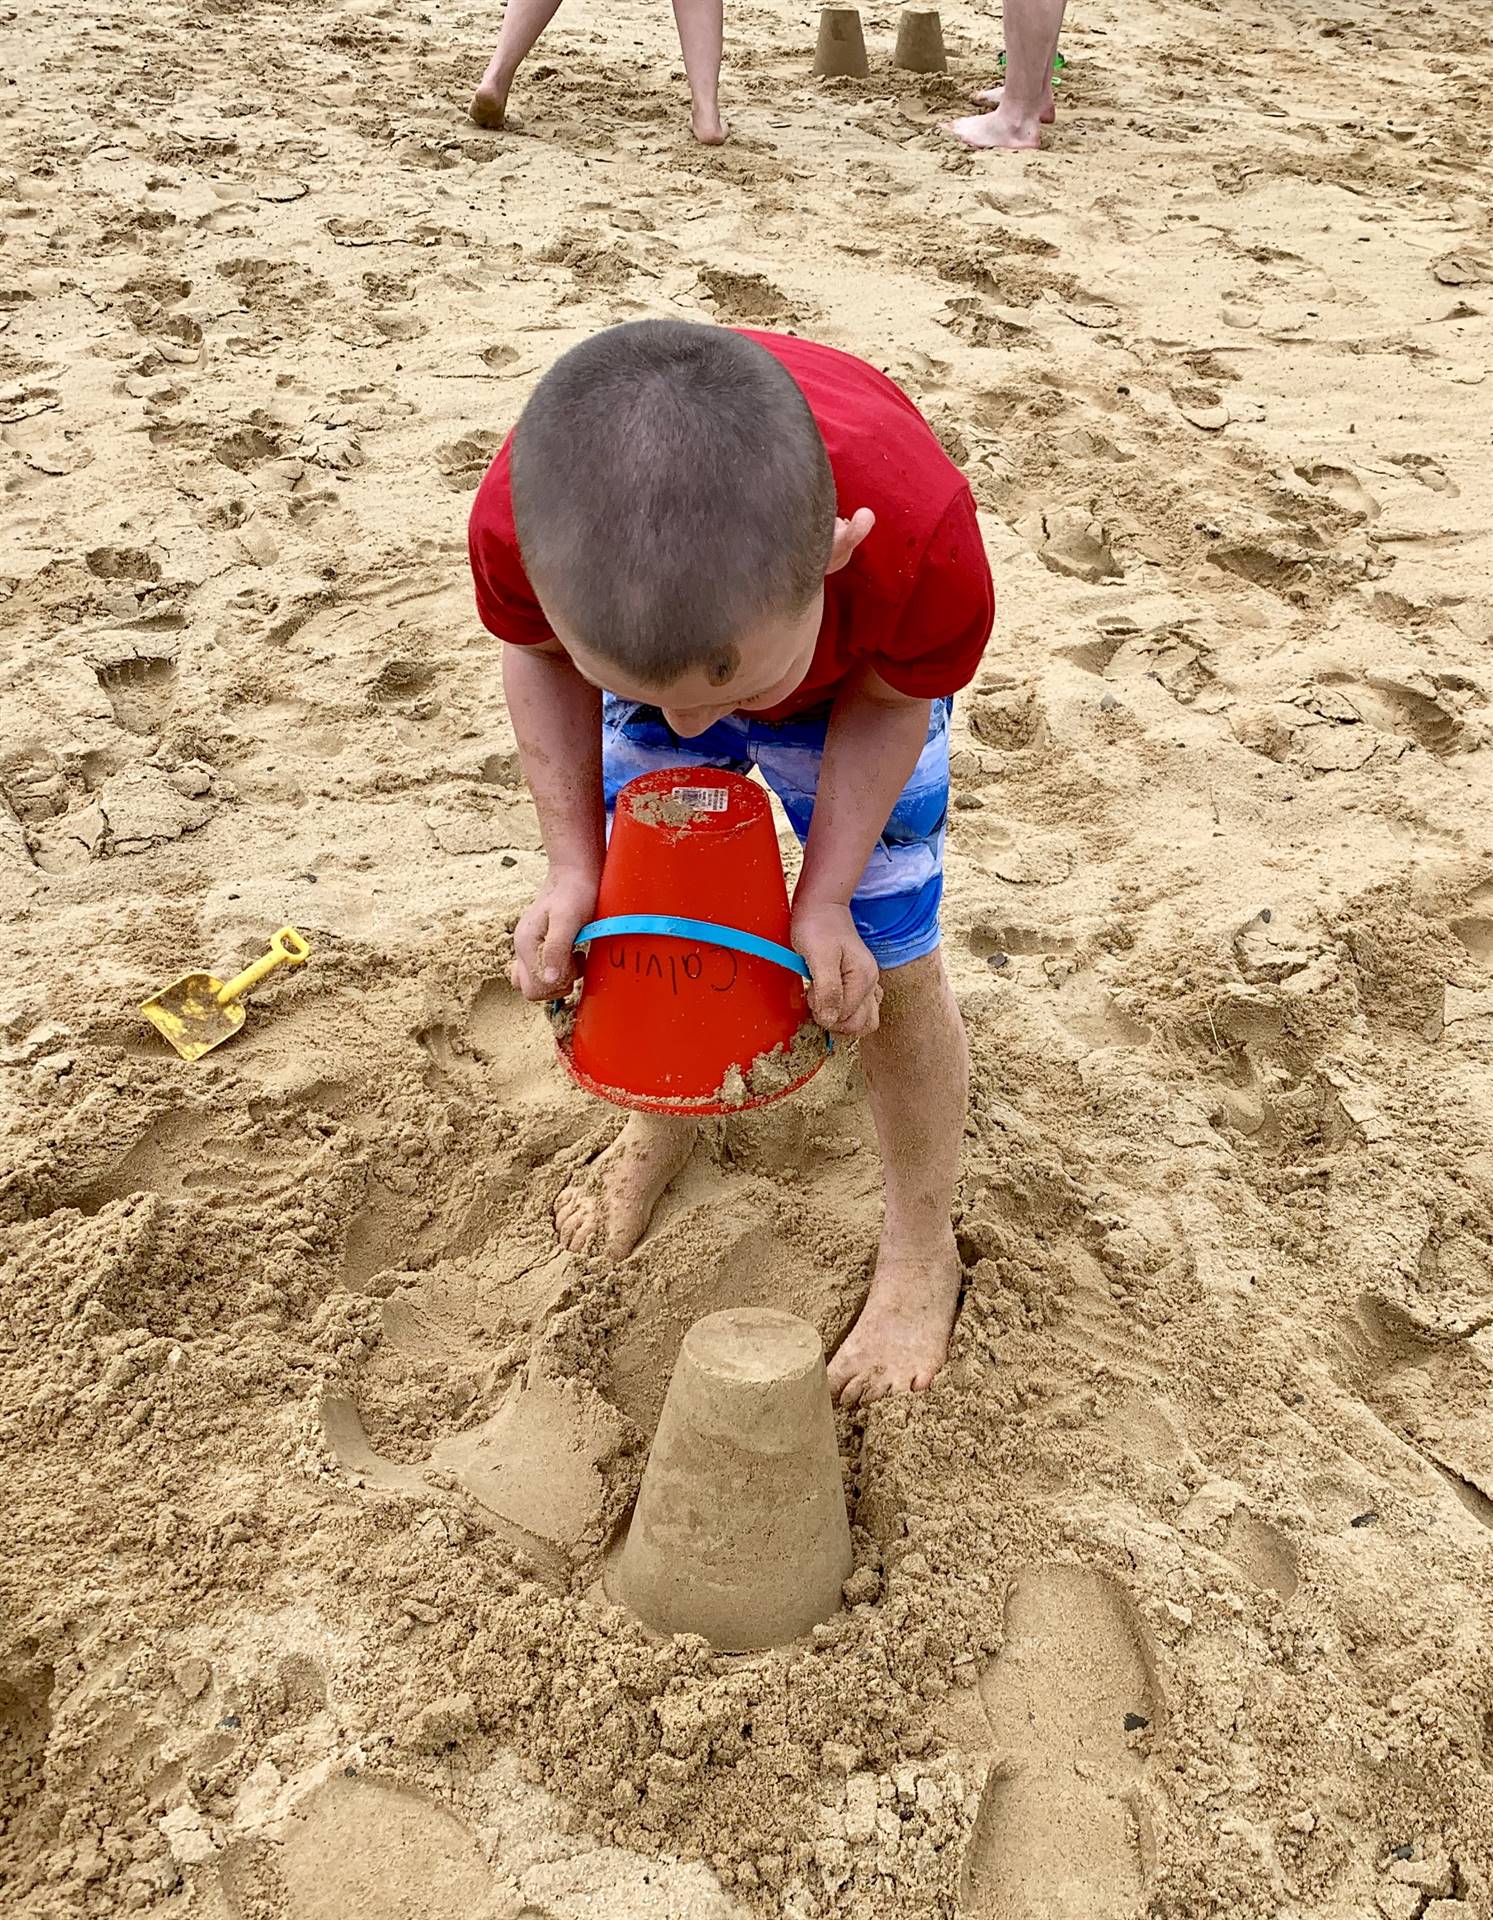 A student builds a sand castle.